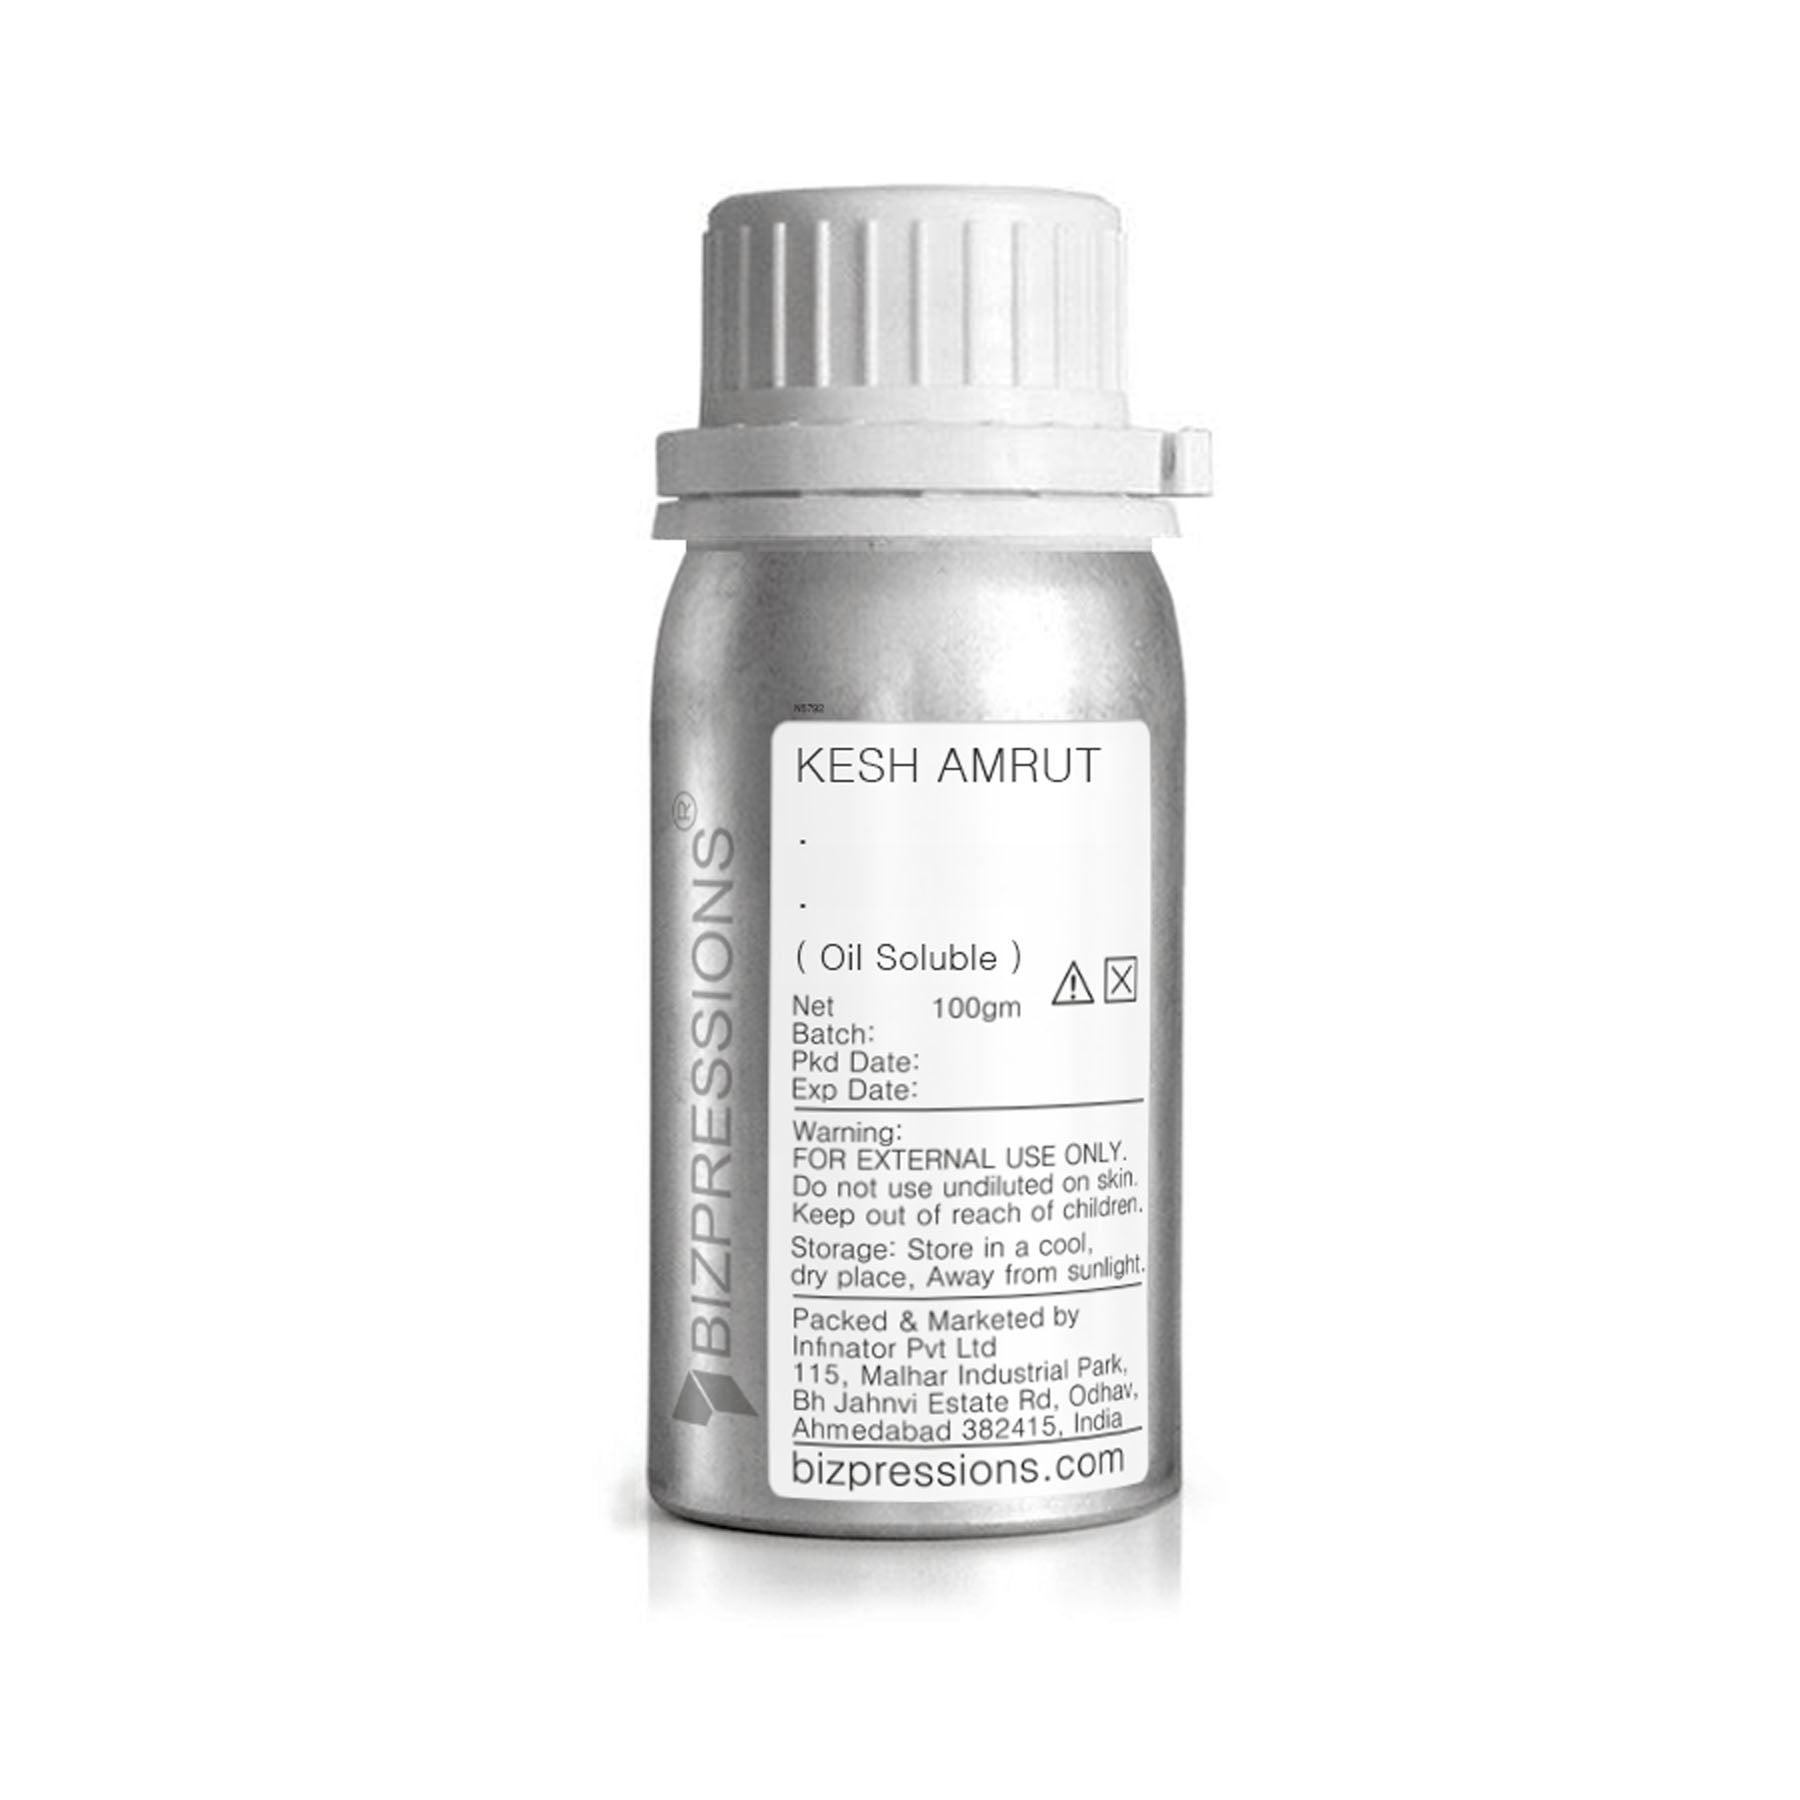 KESH AMRUT - Fragrance ( Oil Soluble ) - 100 gm